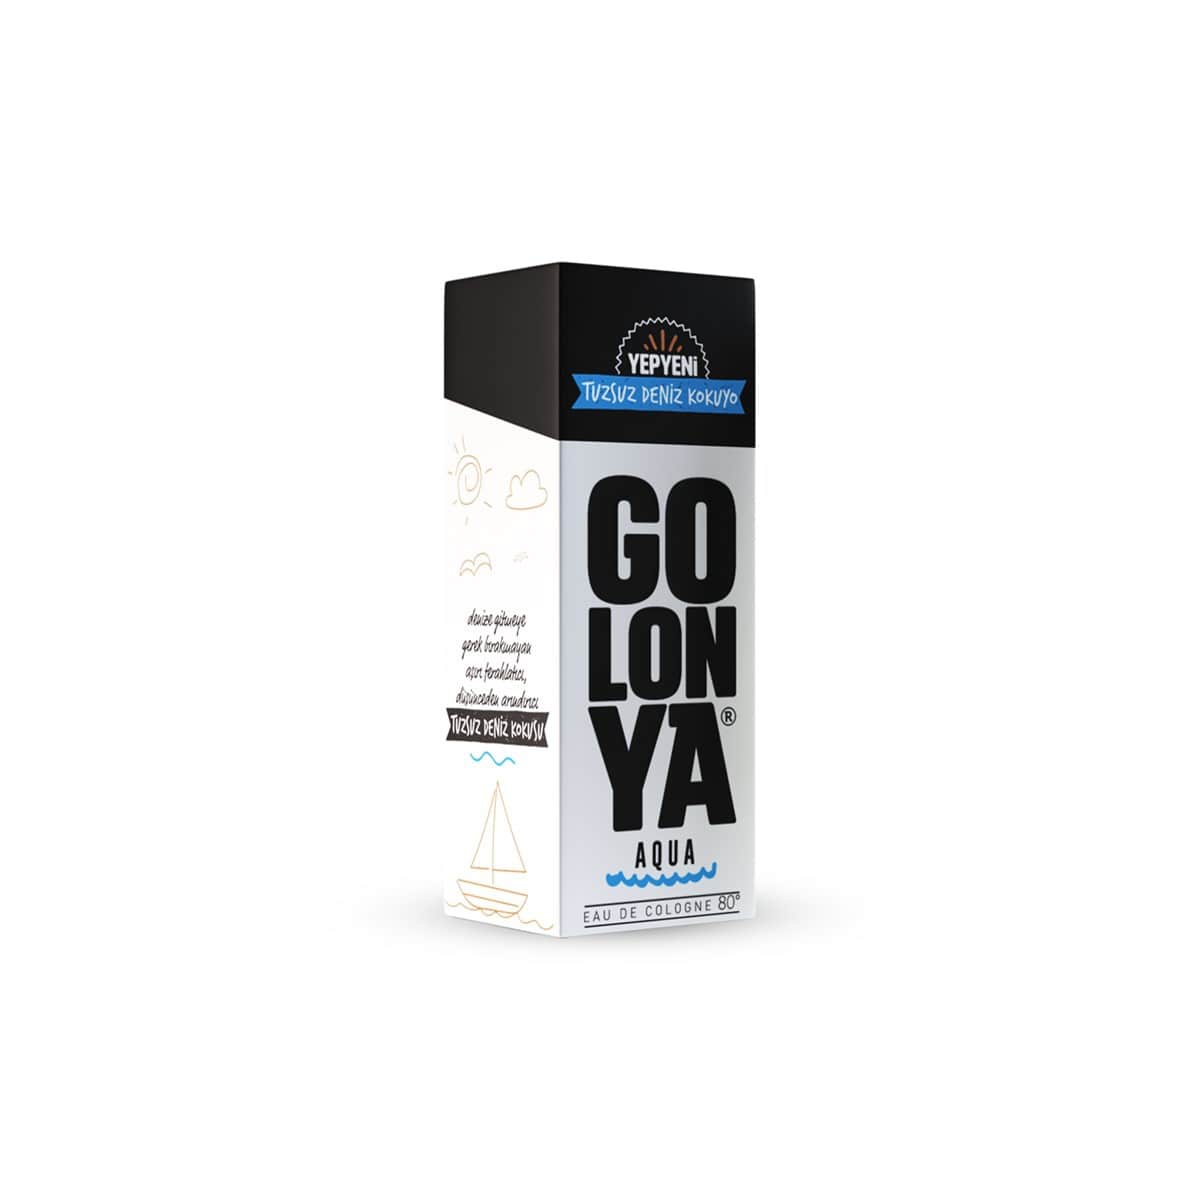 GOLONYA Aqua - kolínska voda s vôňou neslanej morskej vody